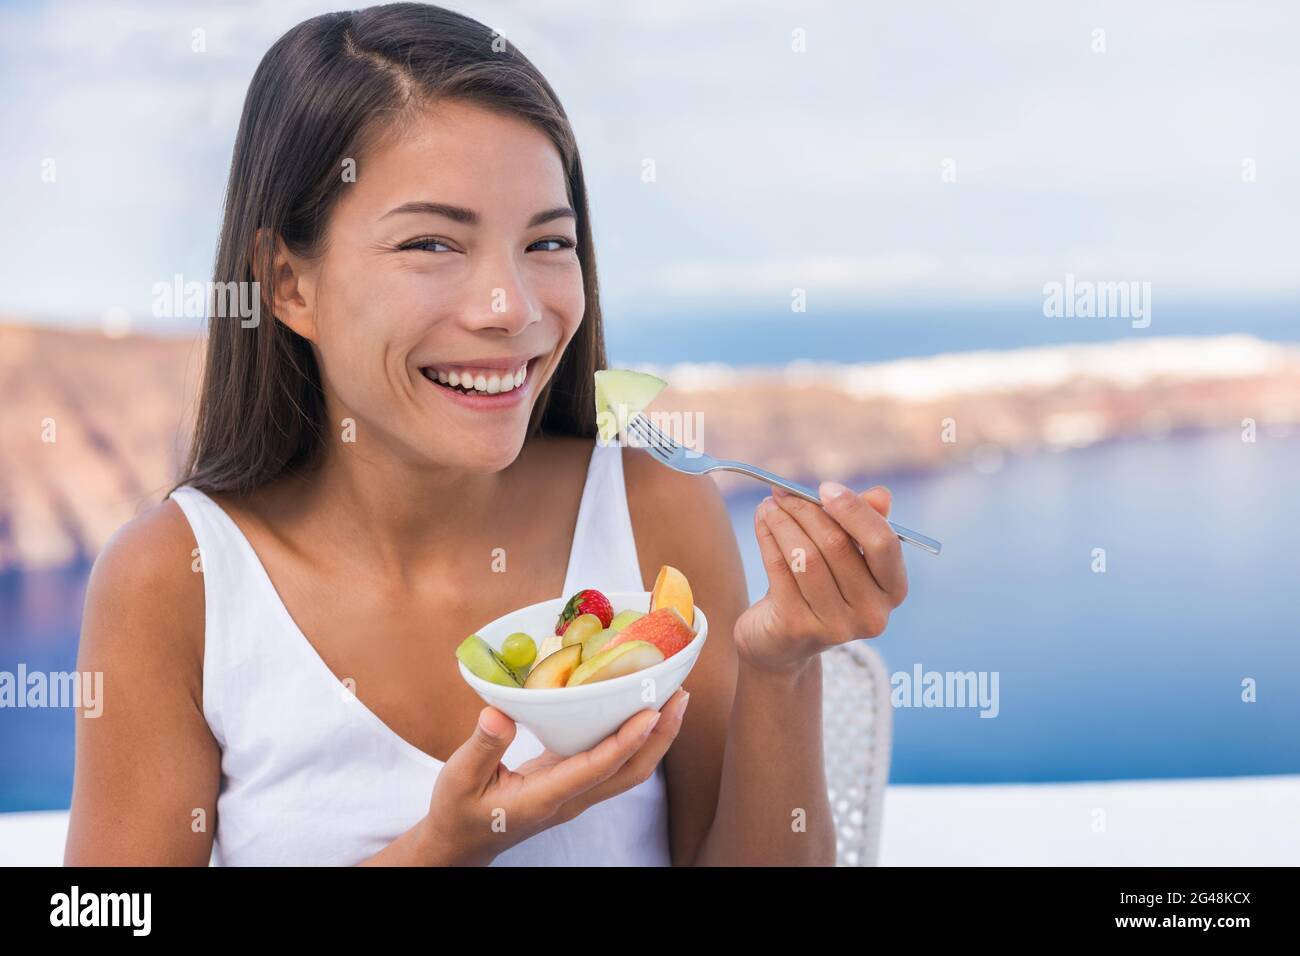 Alimentazione sana donna mangiare frutta perdita di peso dieta Foto Stock